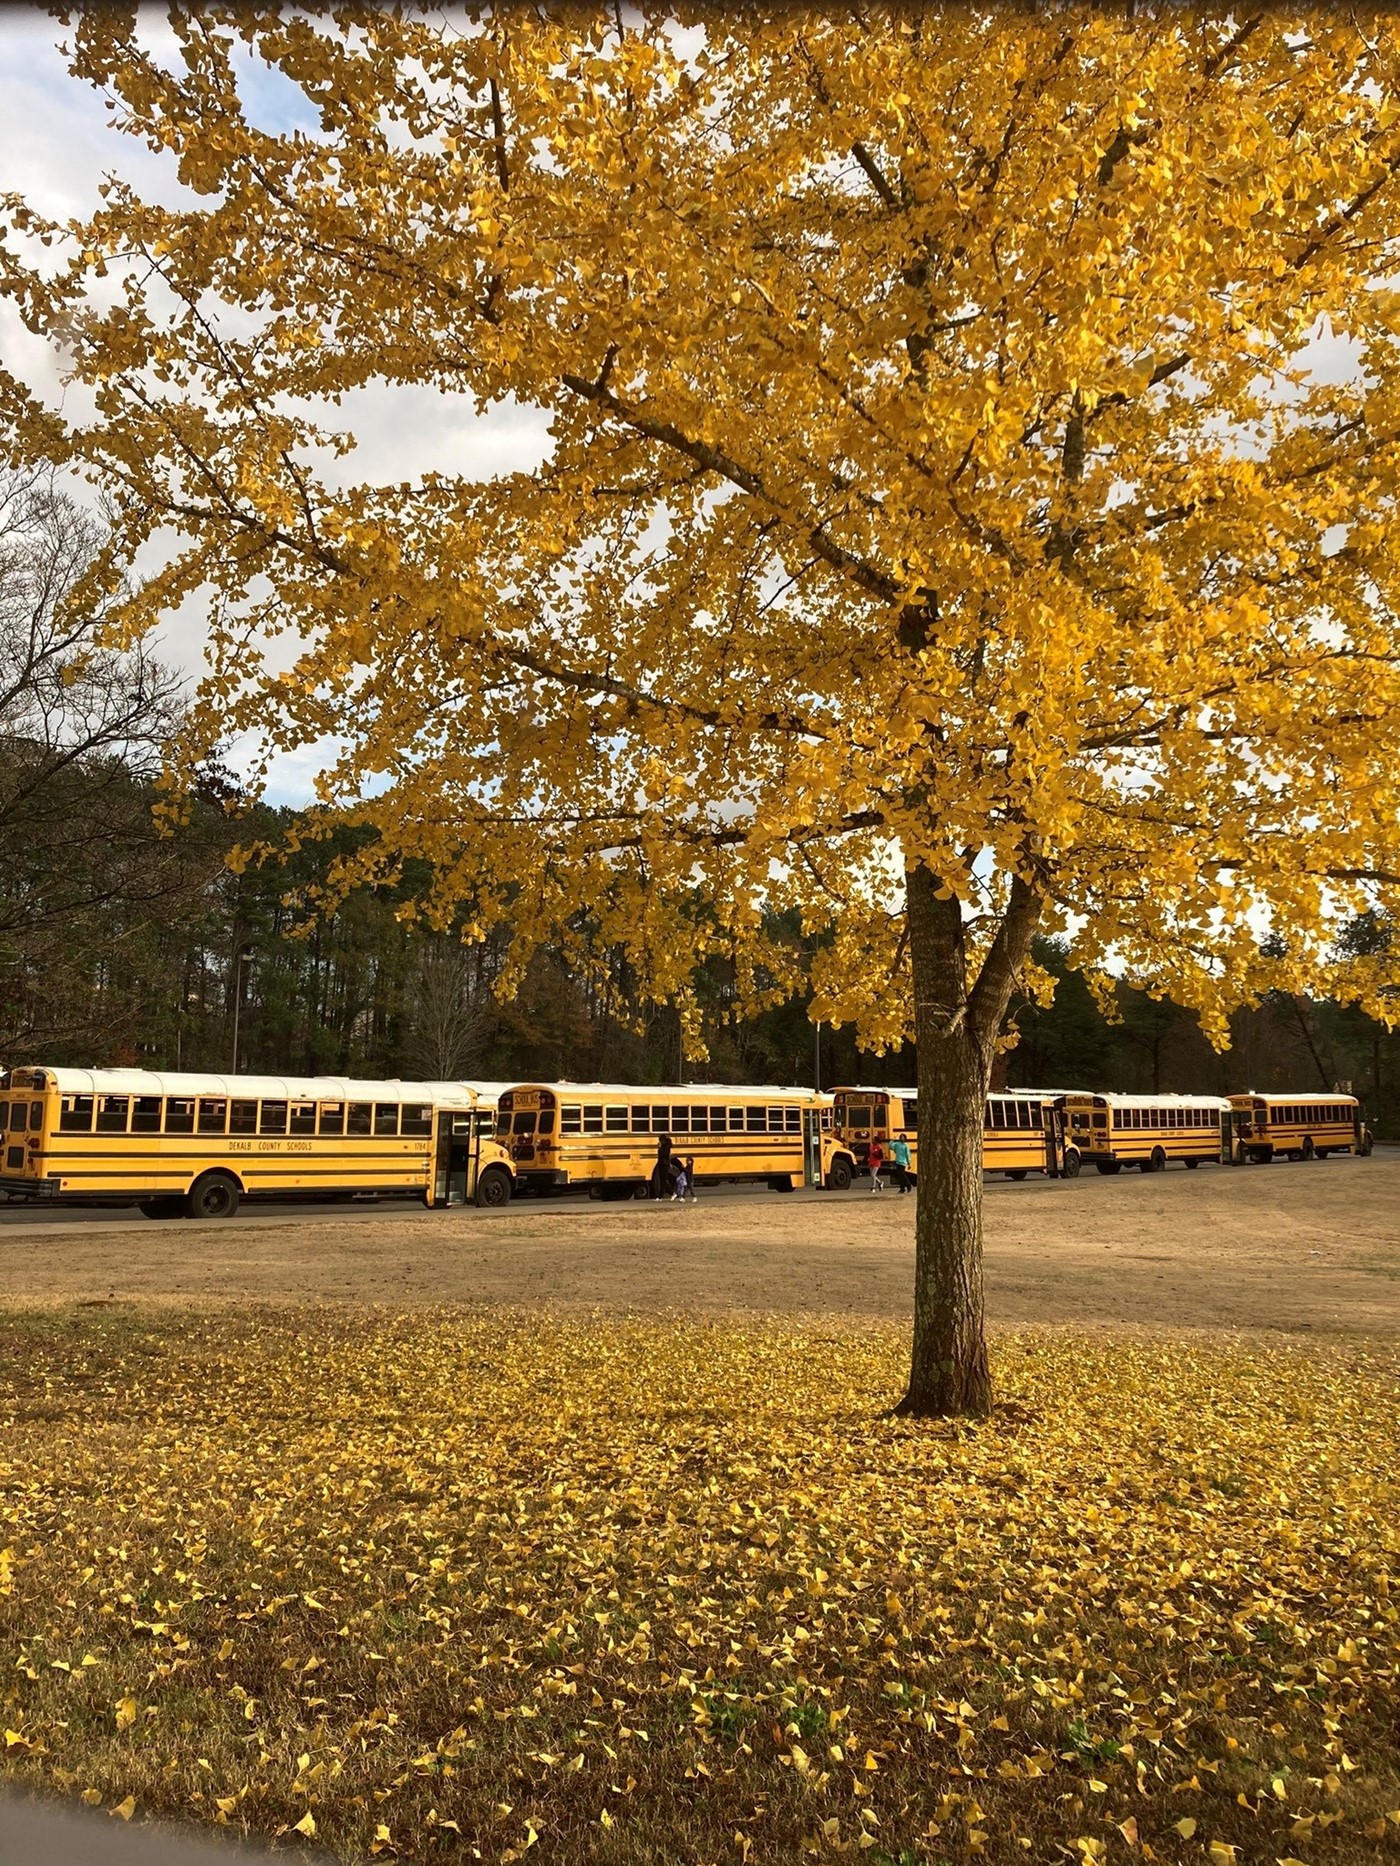 School Busses in front of school